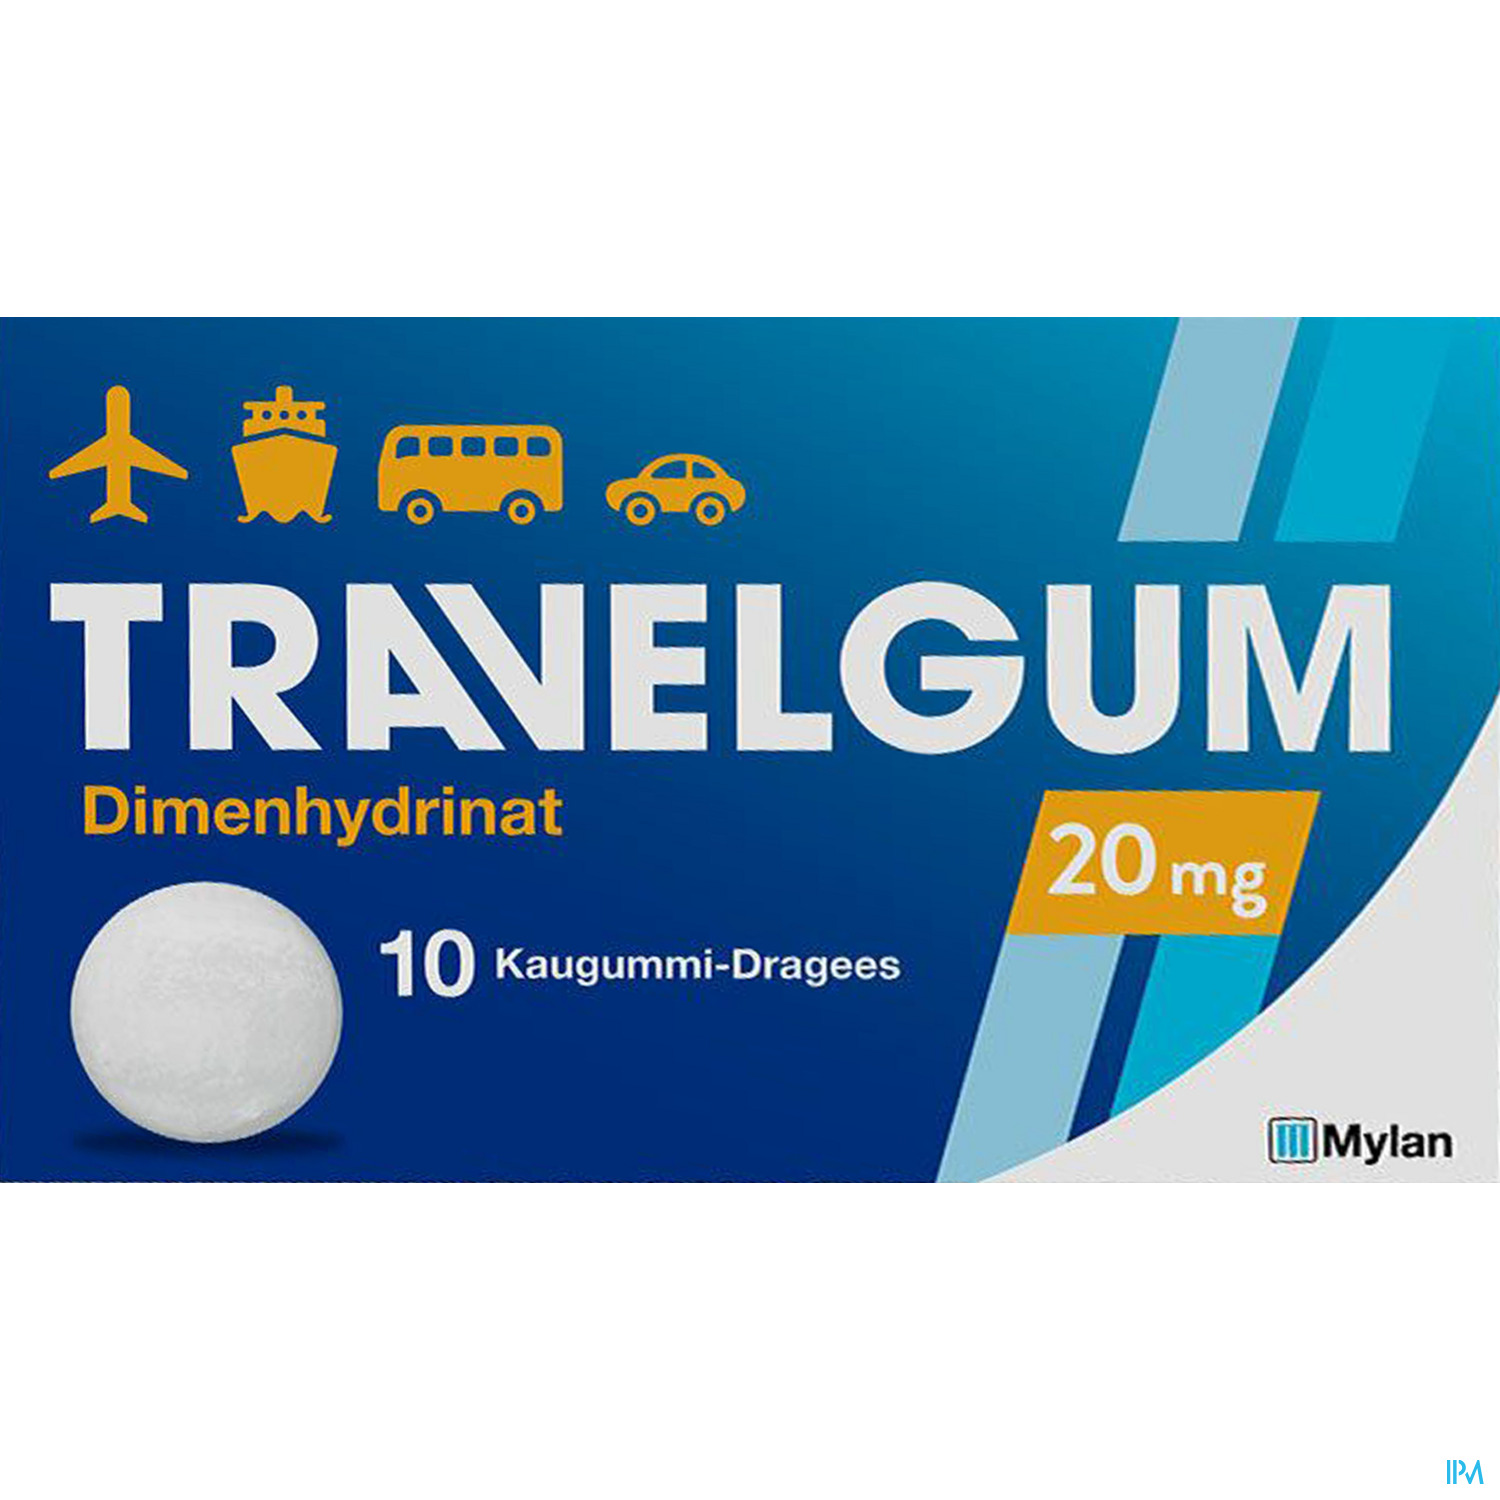 Travelgum 20 mg Kaugummi - Dragee